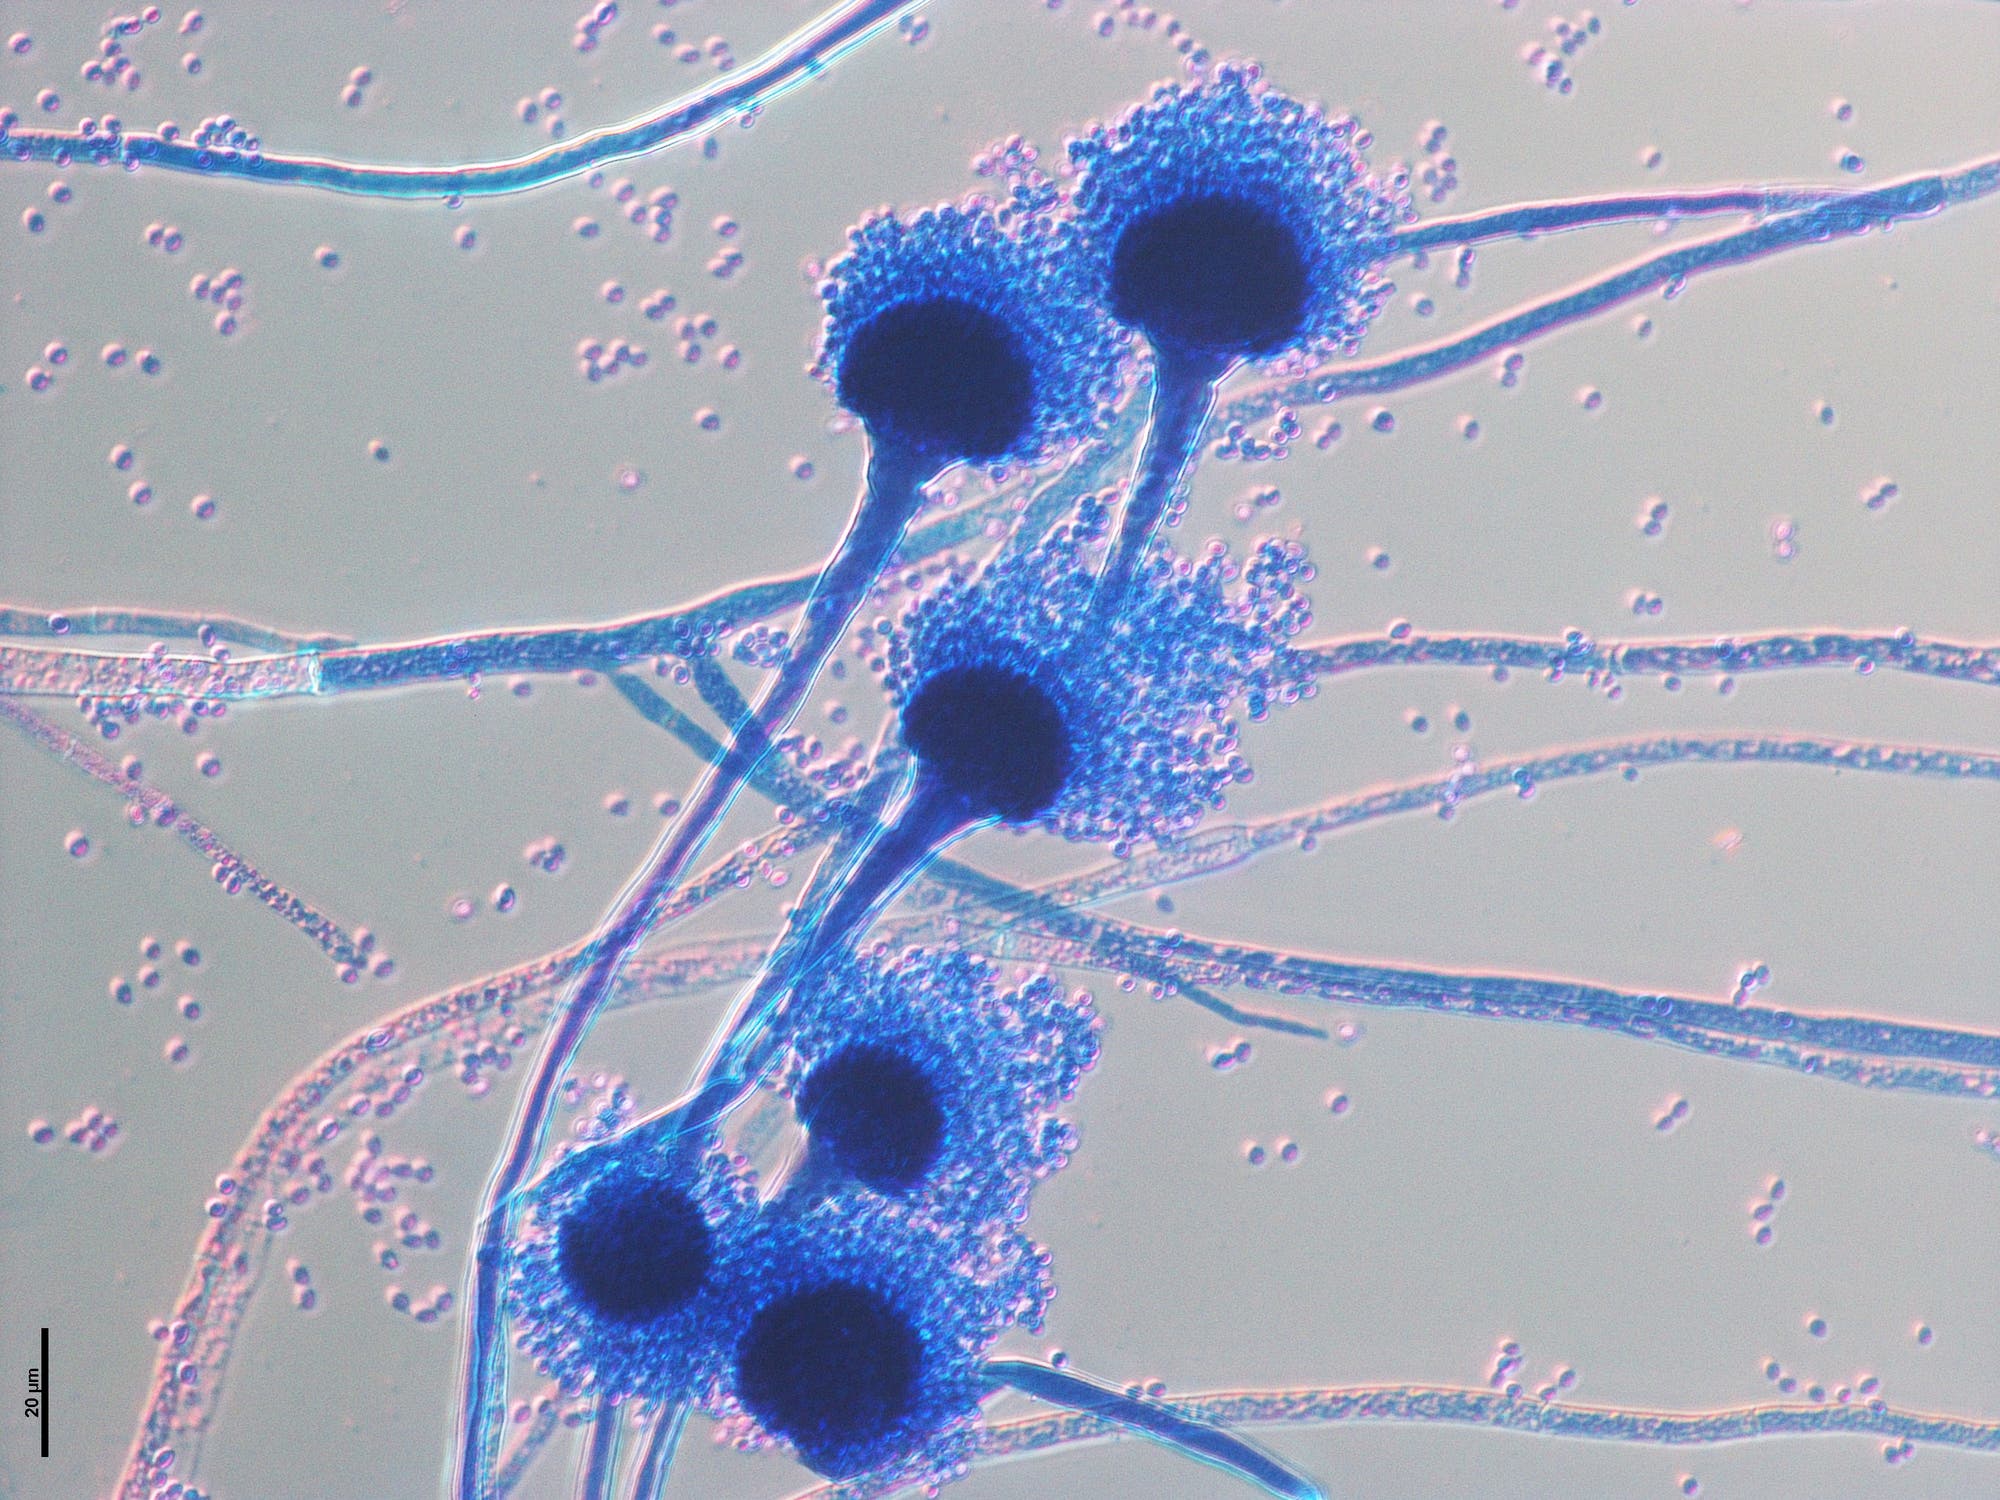 Mikroskopische Aufnahme des Pilzes Aspergillus fumigatus